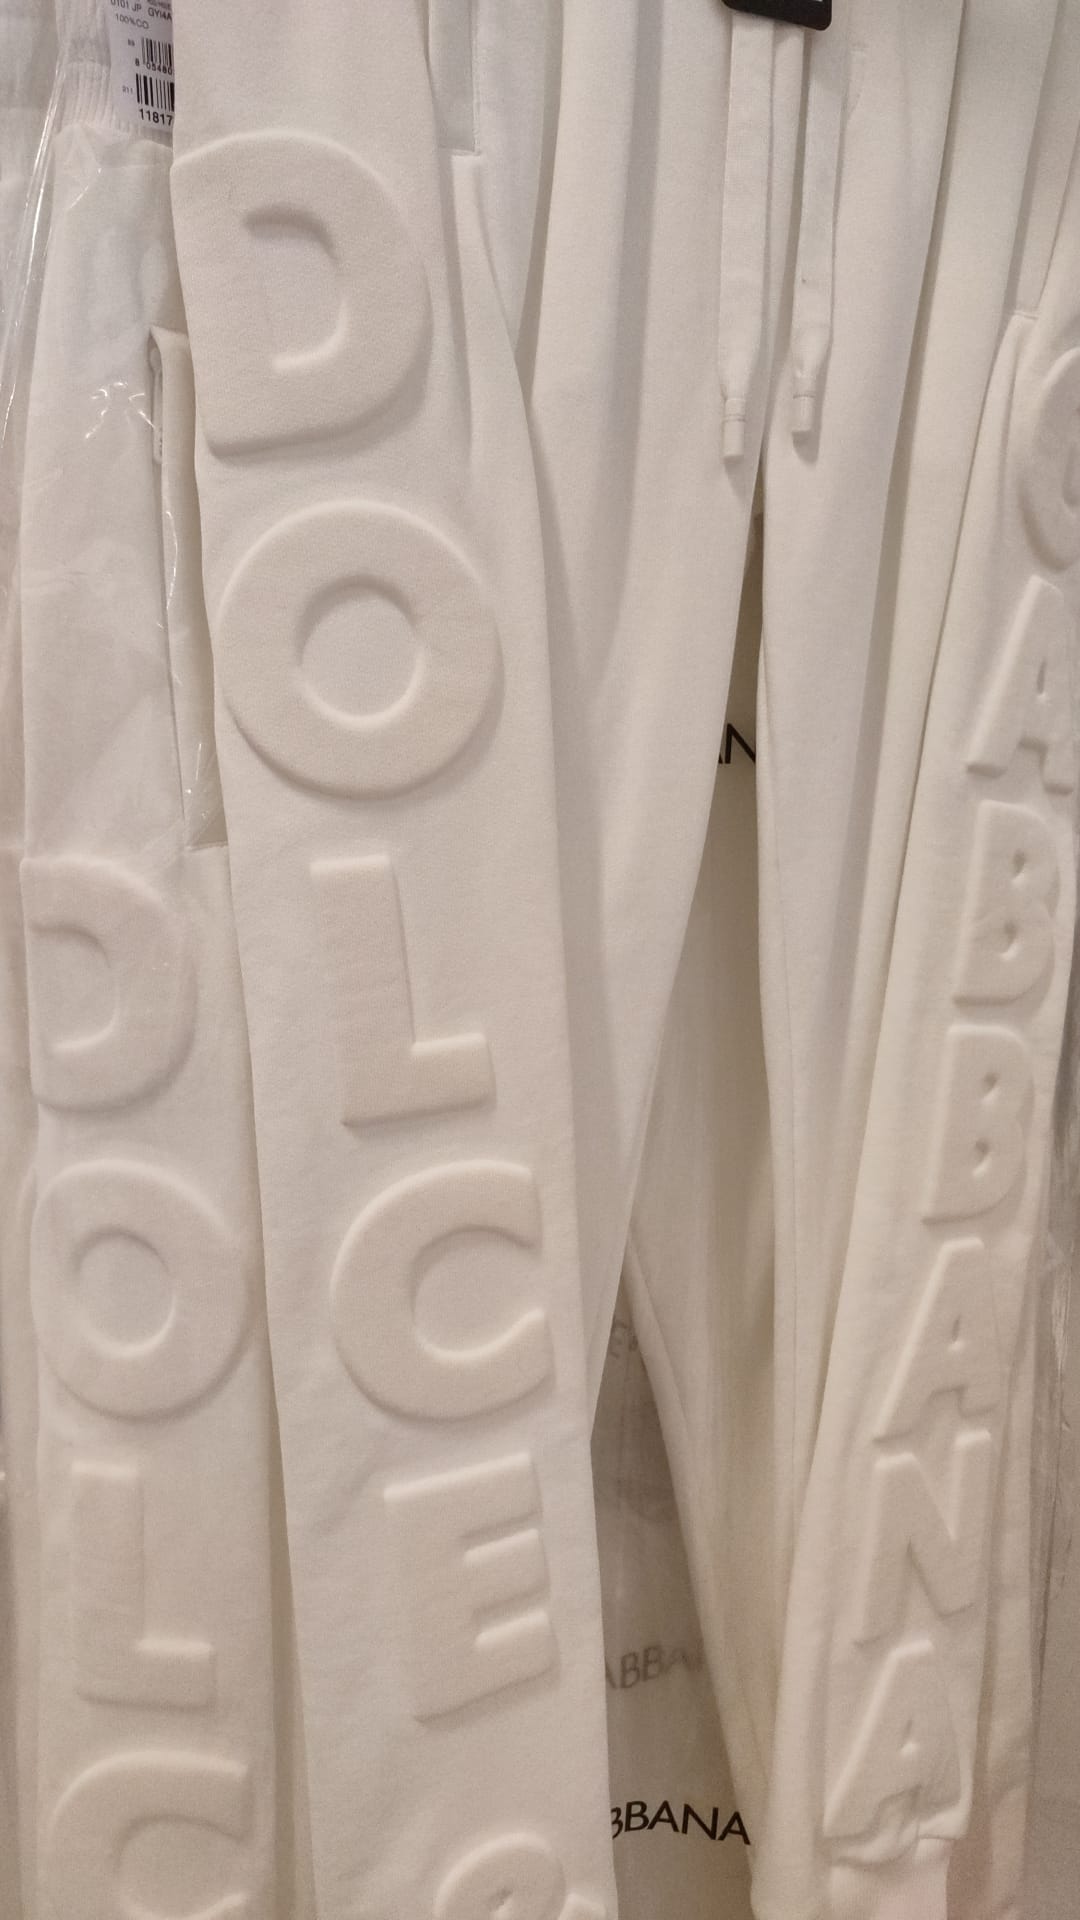 Dolce & Gabbana White Sport Logo Cotton Sweatpants Trousers Pants